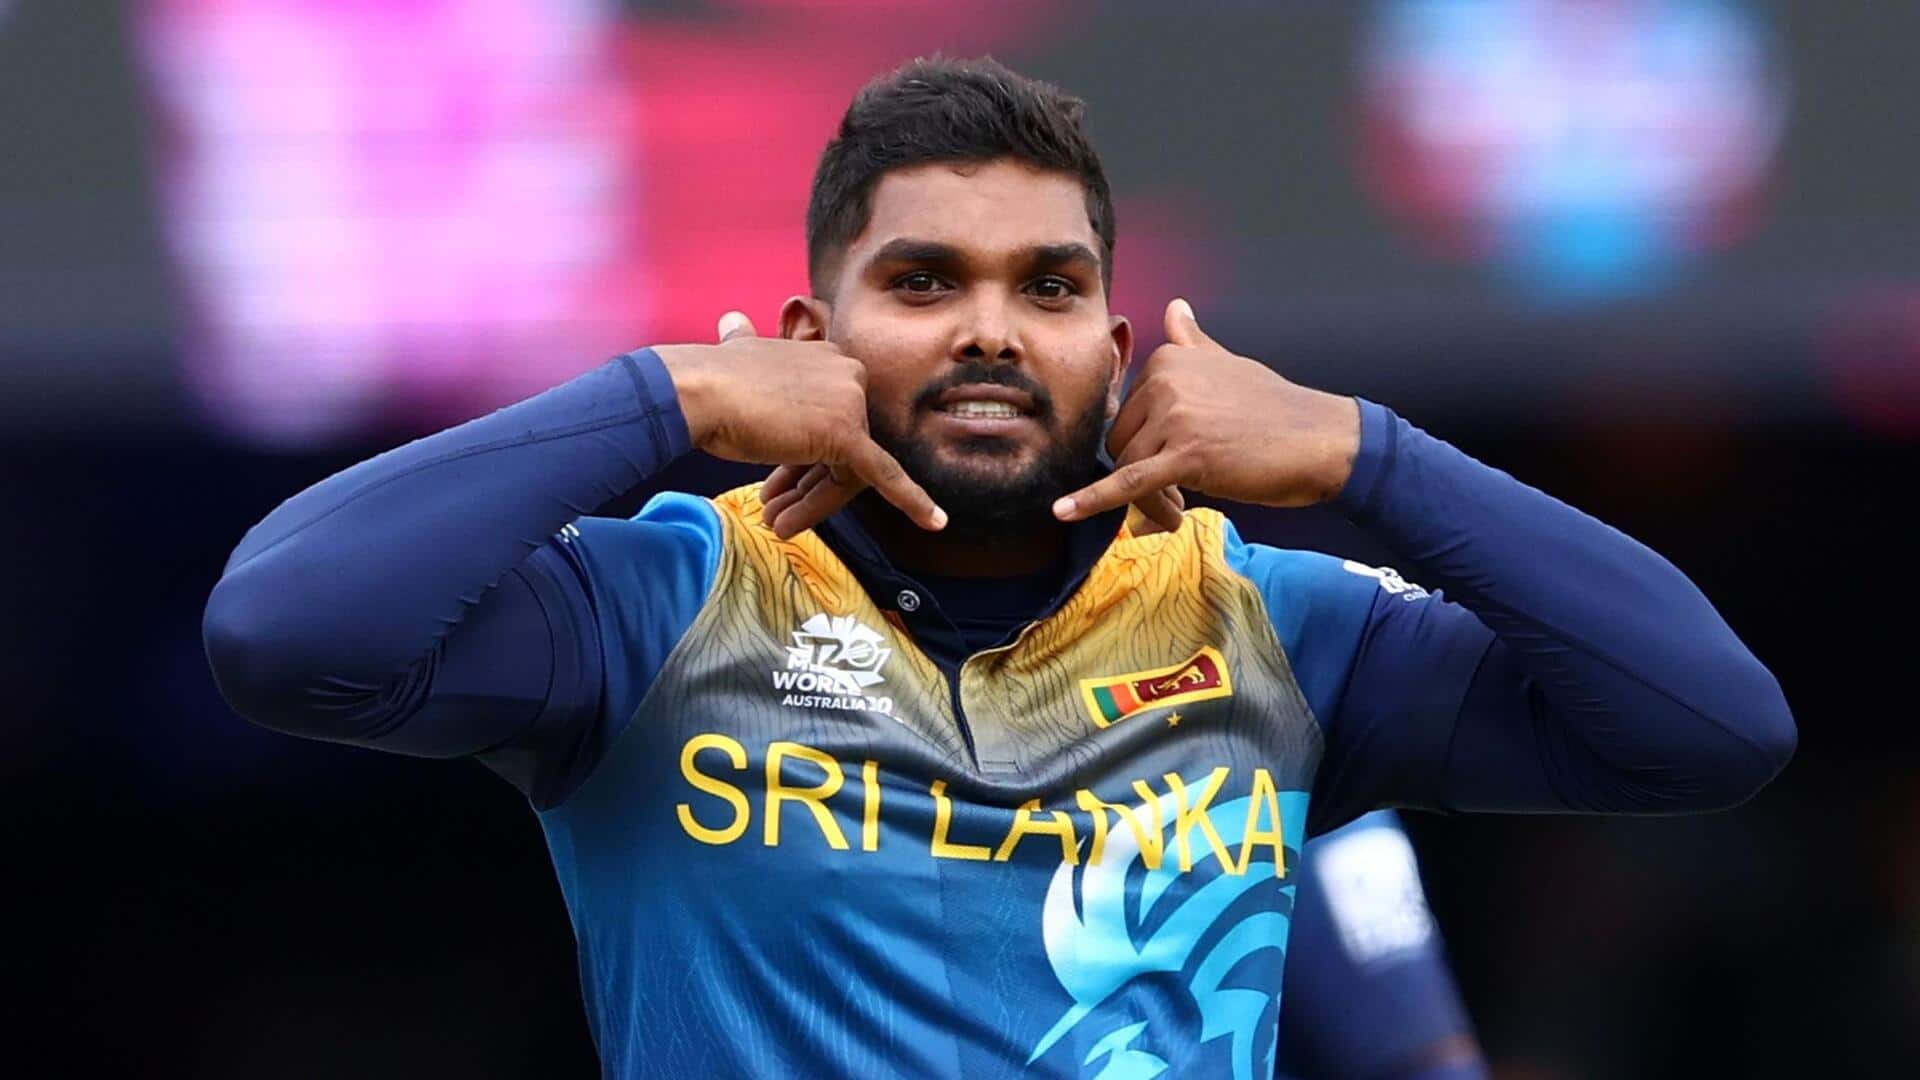 वनिंदु हसरंगा को सौंपी जा सकती है श्रीलंका की टी-20 टीम की कमान- रिपोर्ट